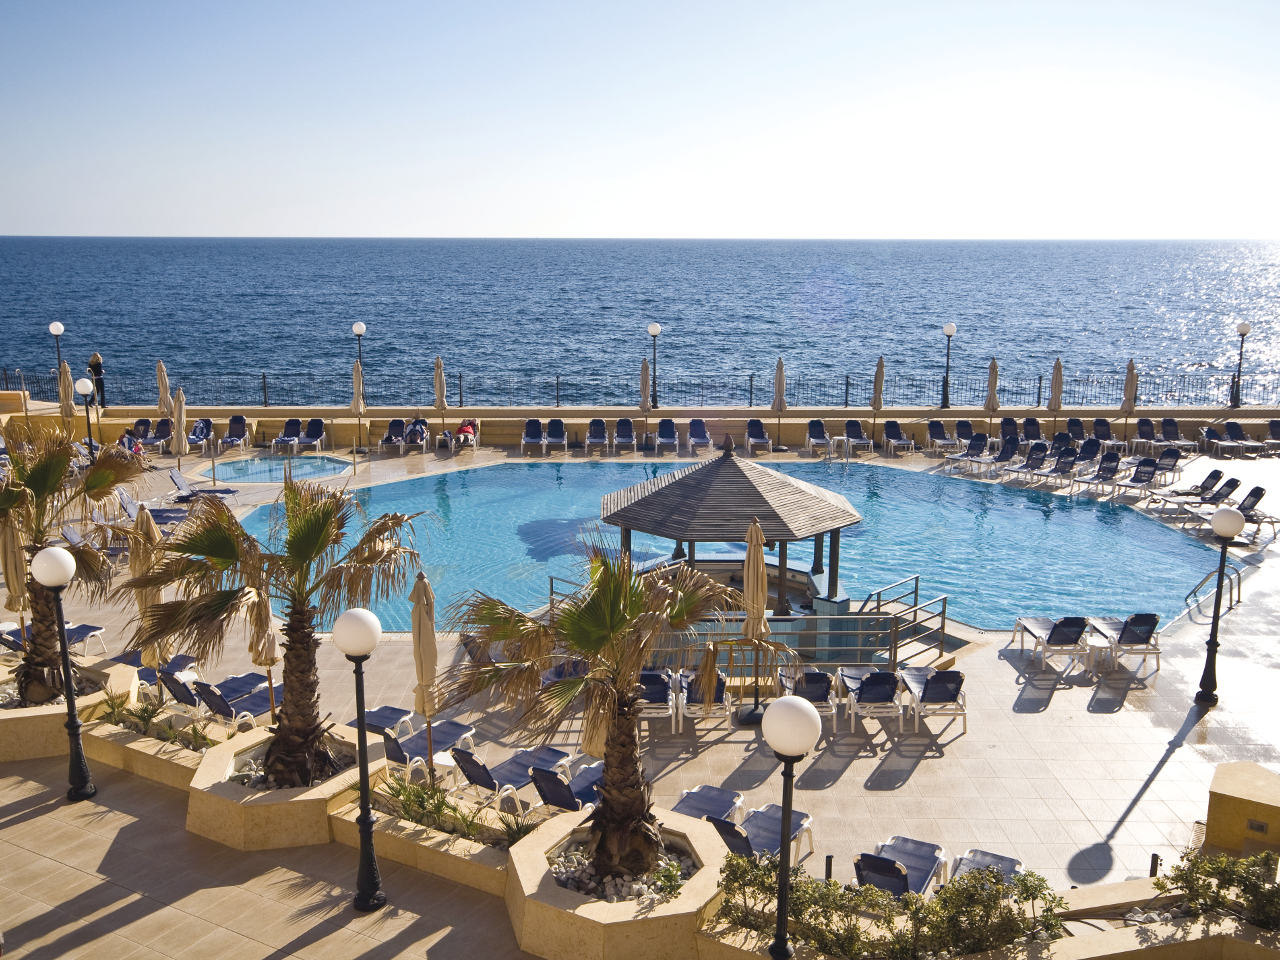 Radisson Blu Resort, Malta St. Julian’s (20)